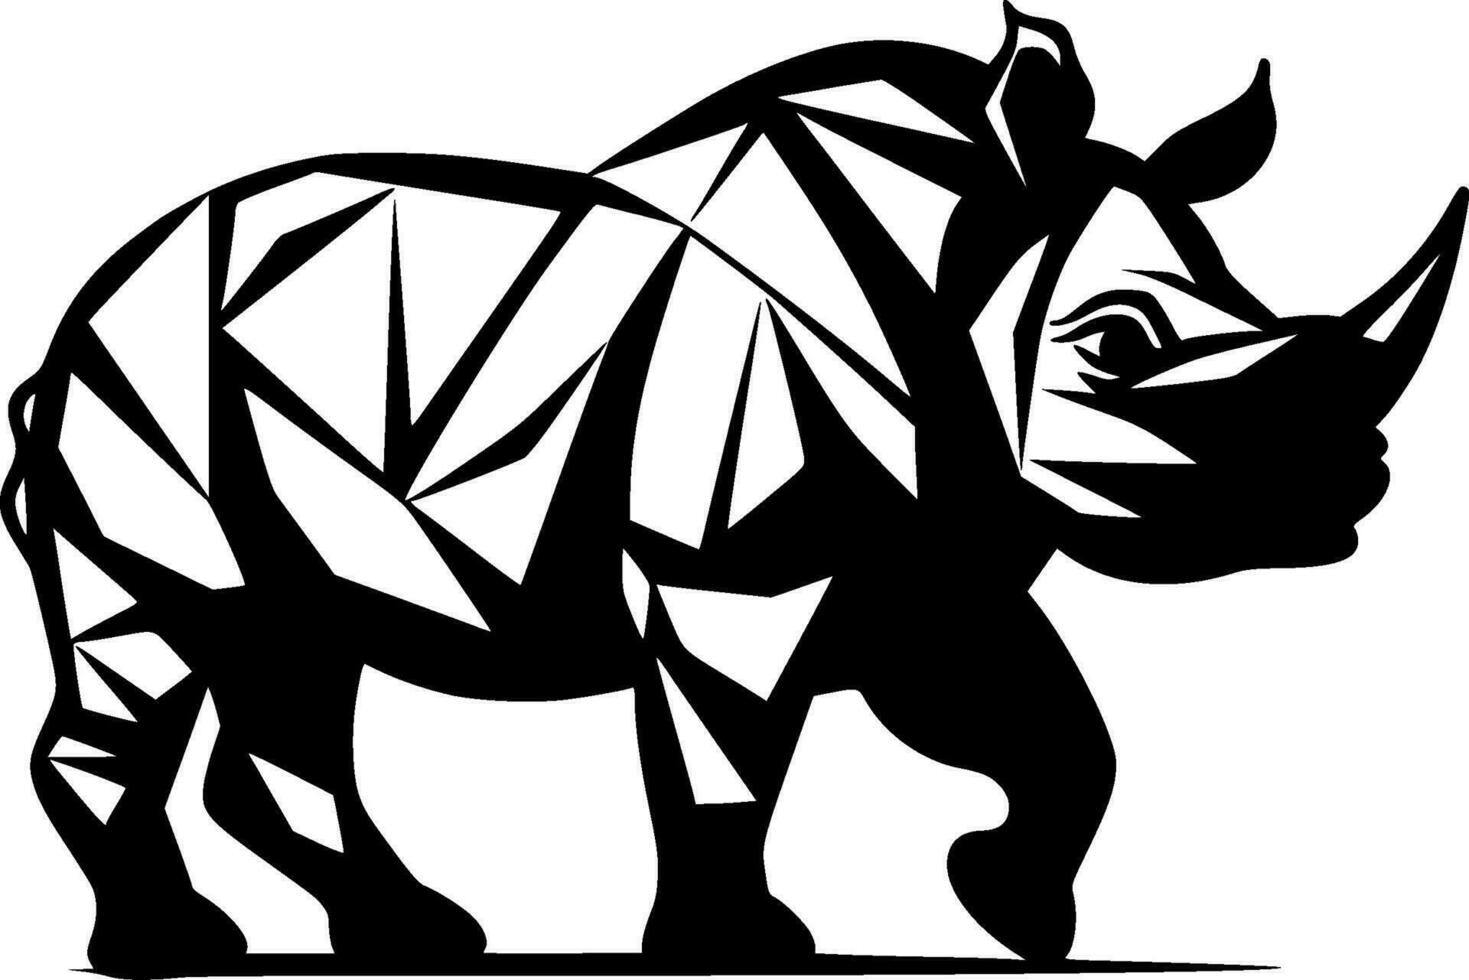 noshörning - minimalistisk och platt logotyp - vektor illustration